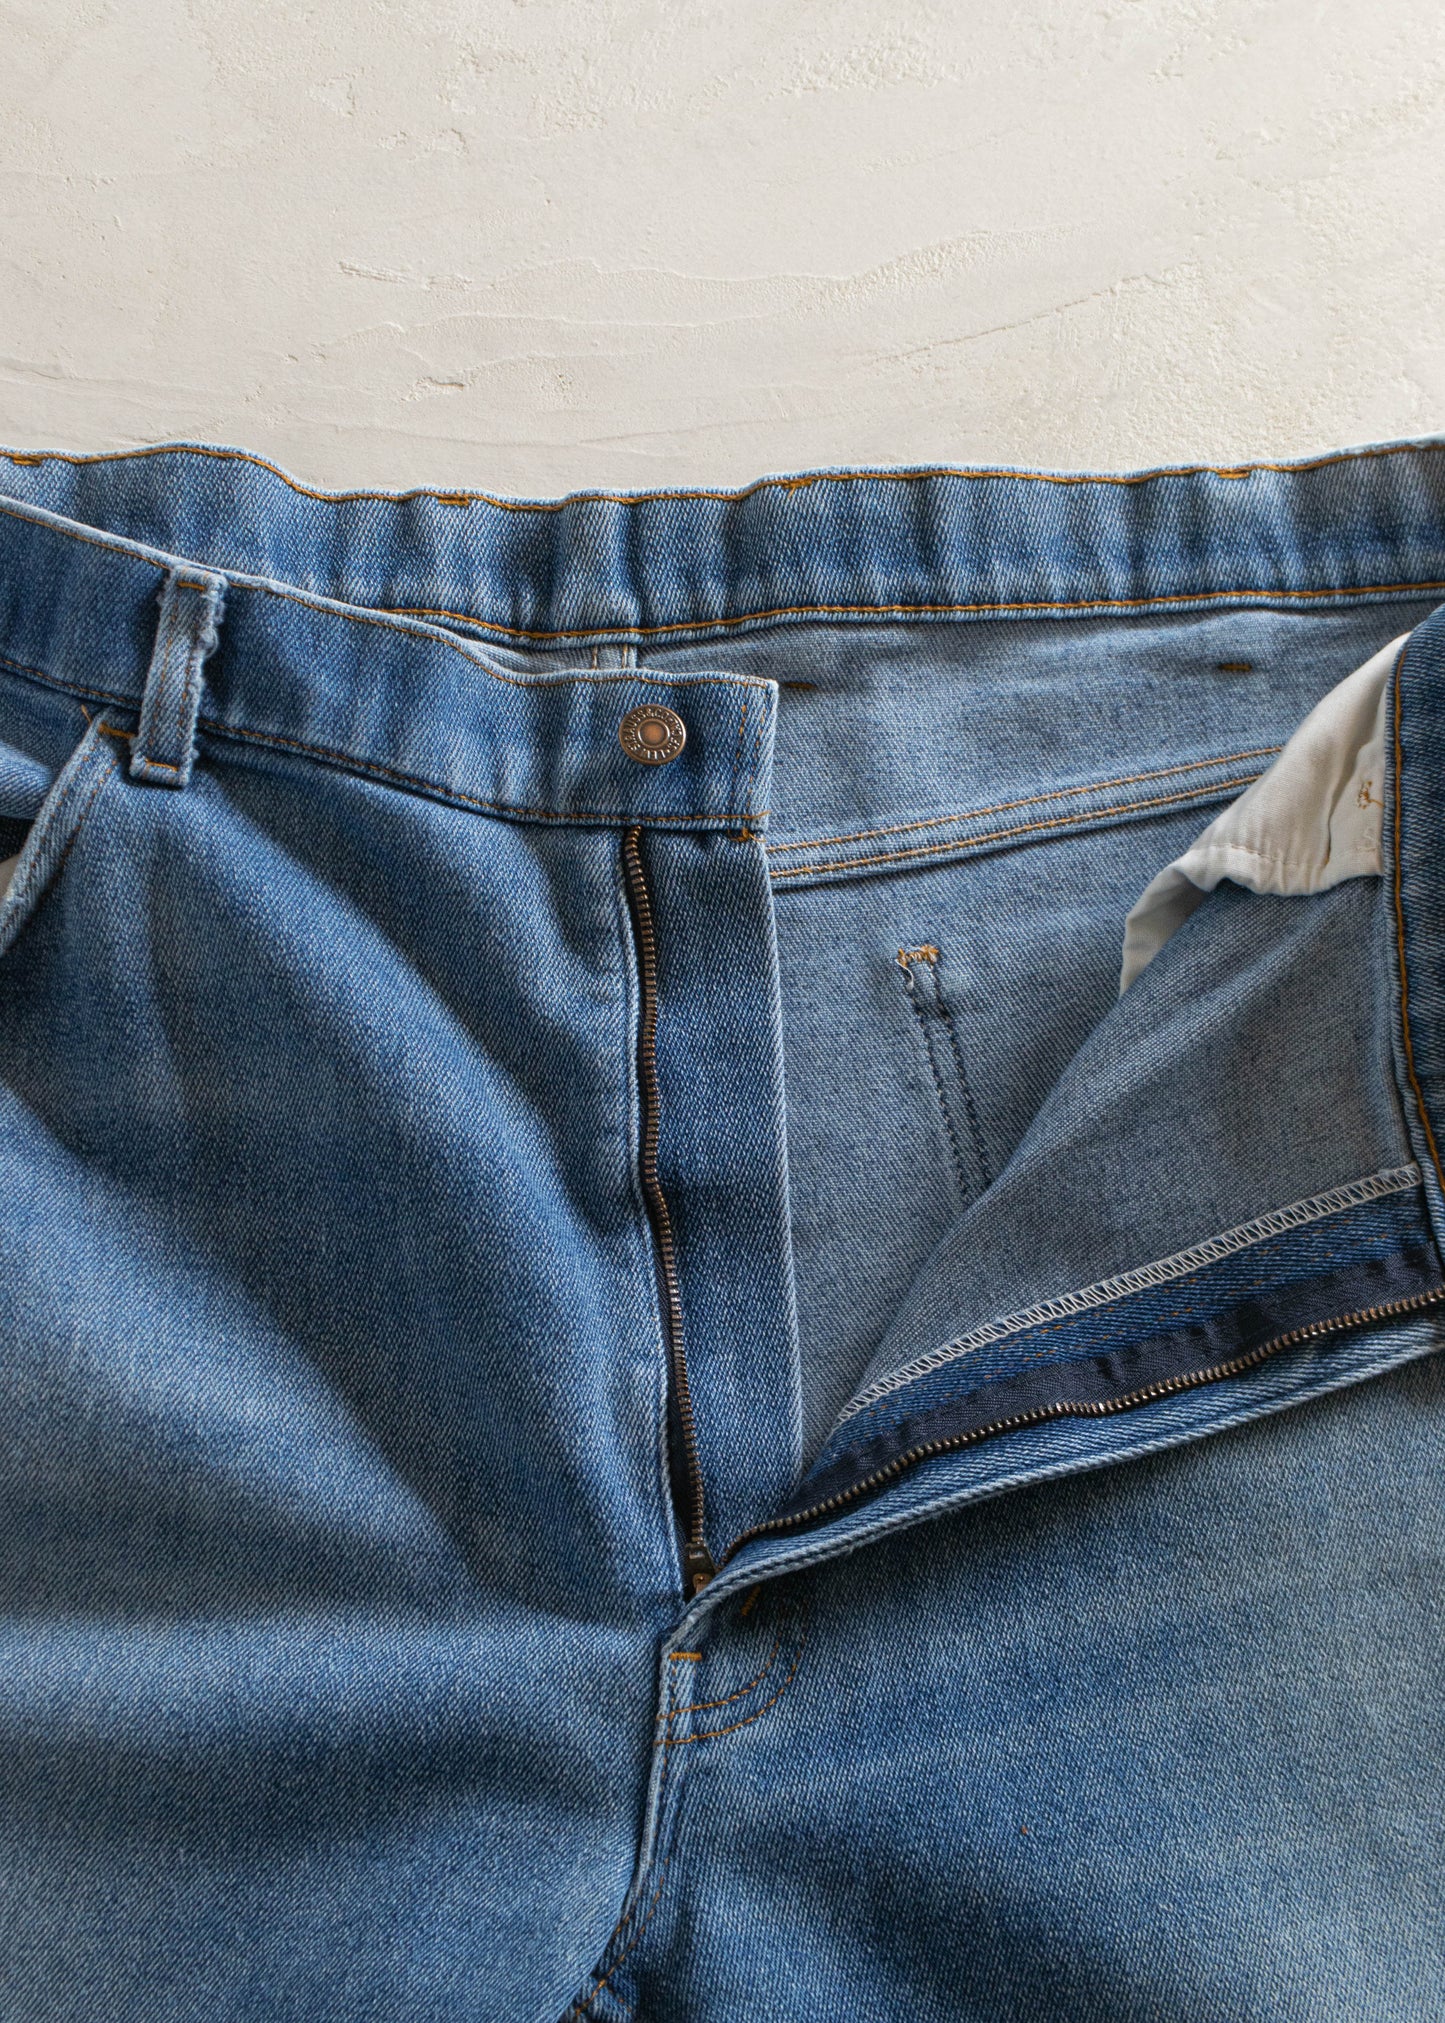 1980s Levi's Midwash Jeans Size Women's 34 Men's 36